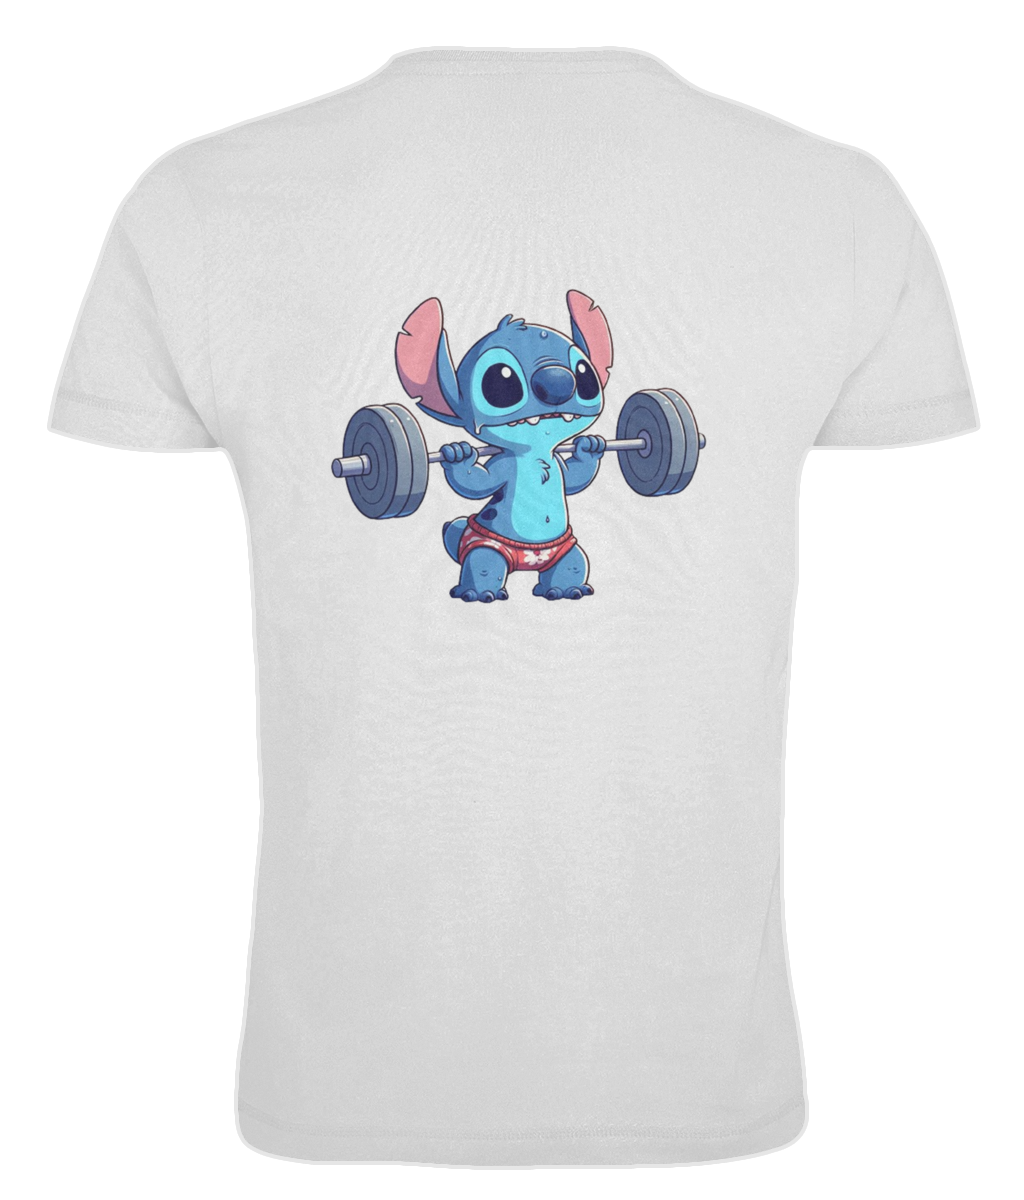 "Stitch" - Oversized T-shirt